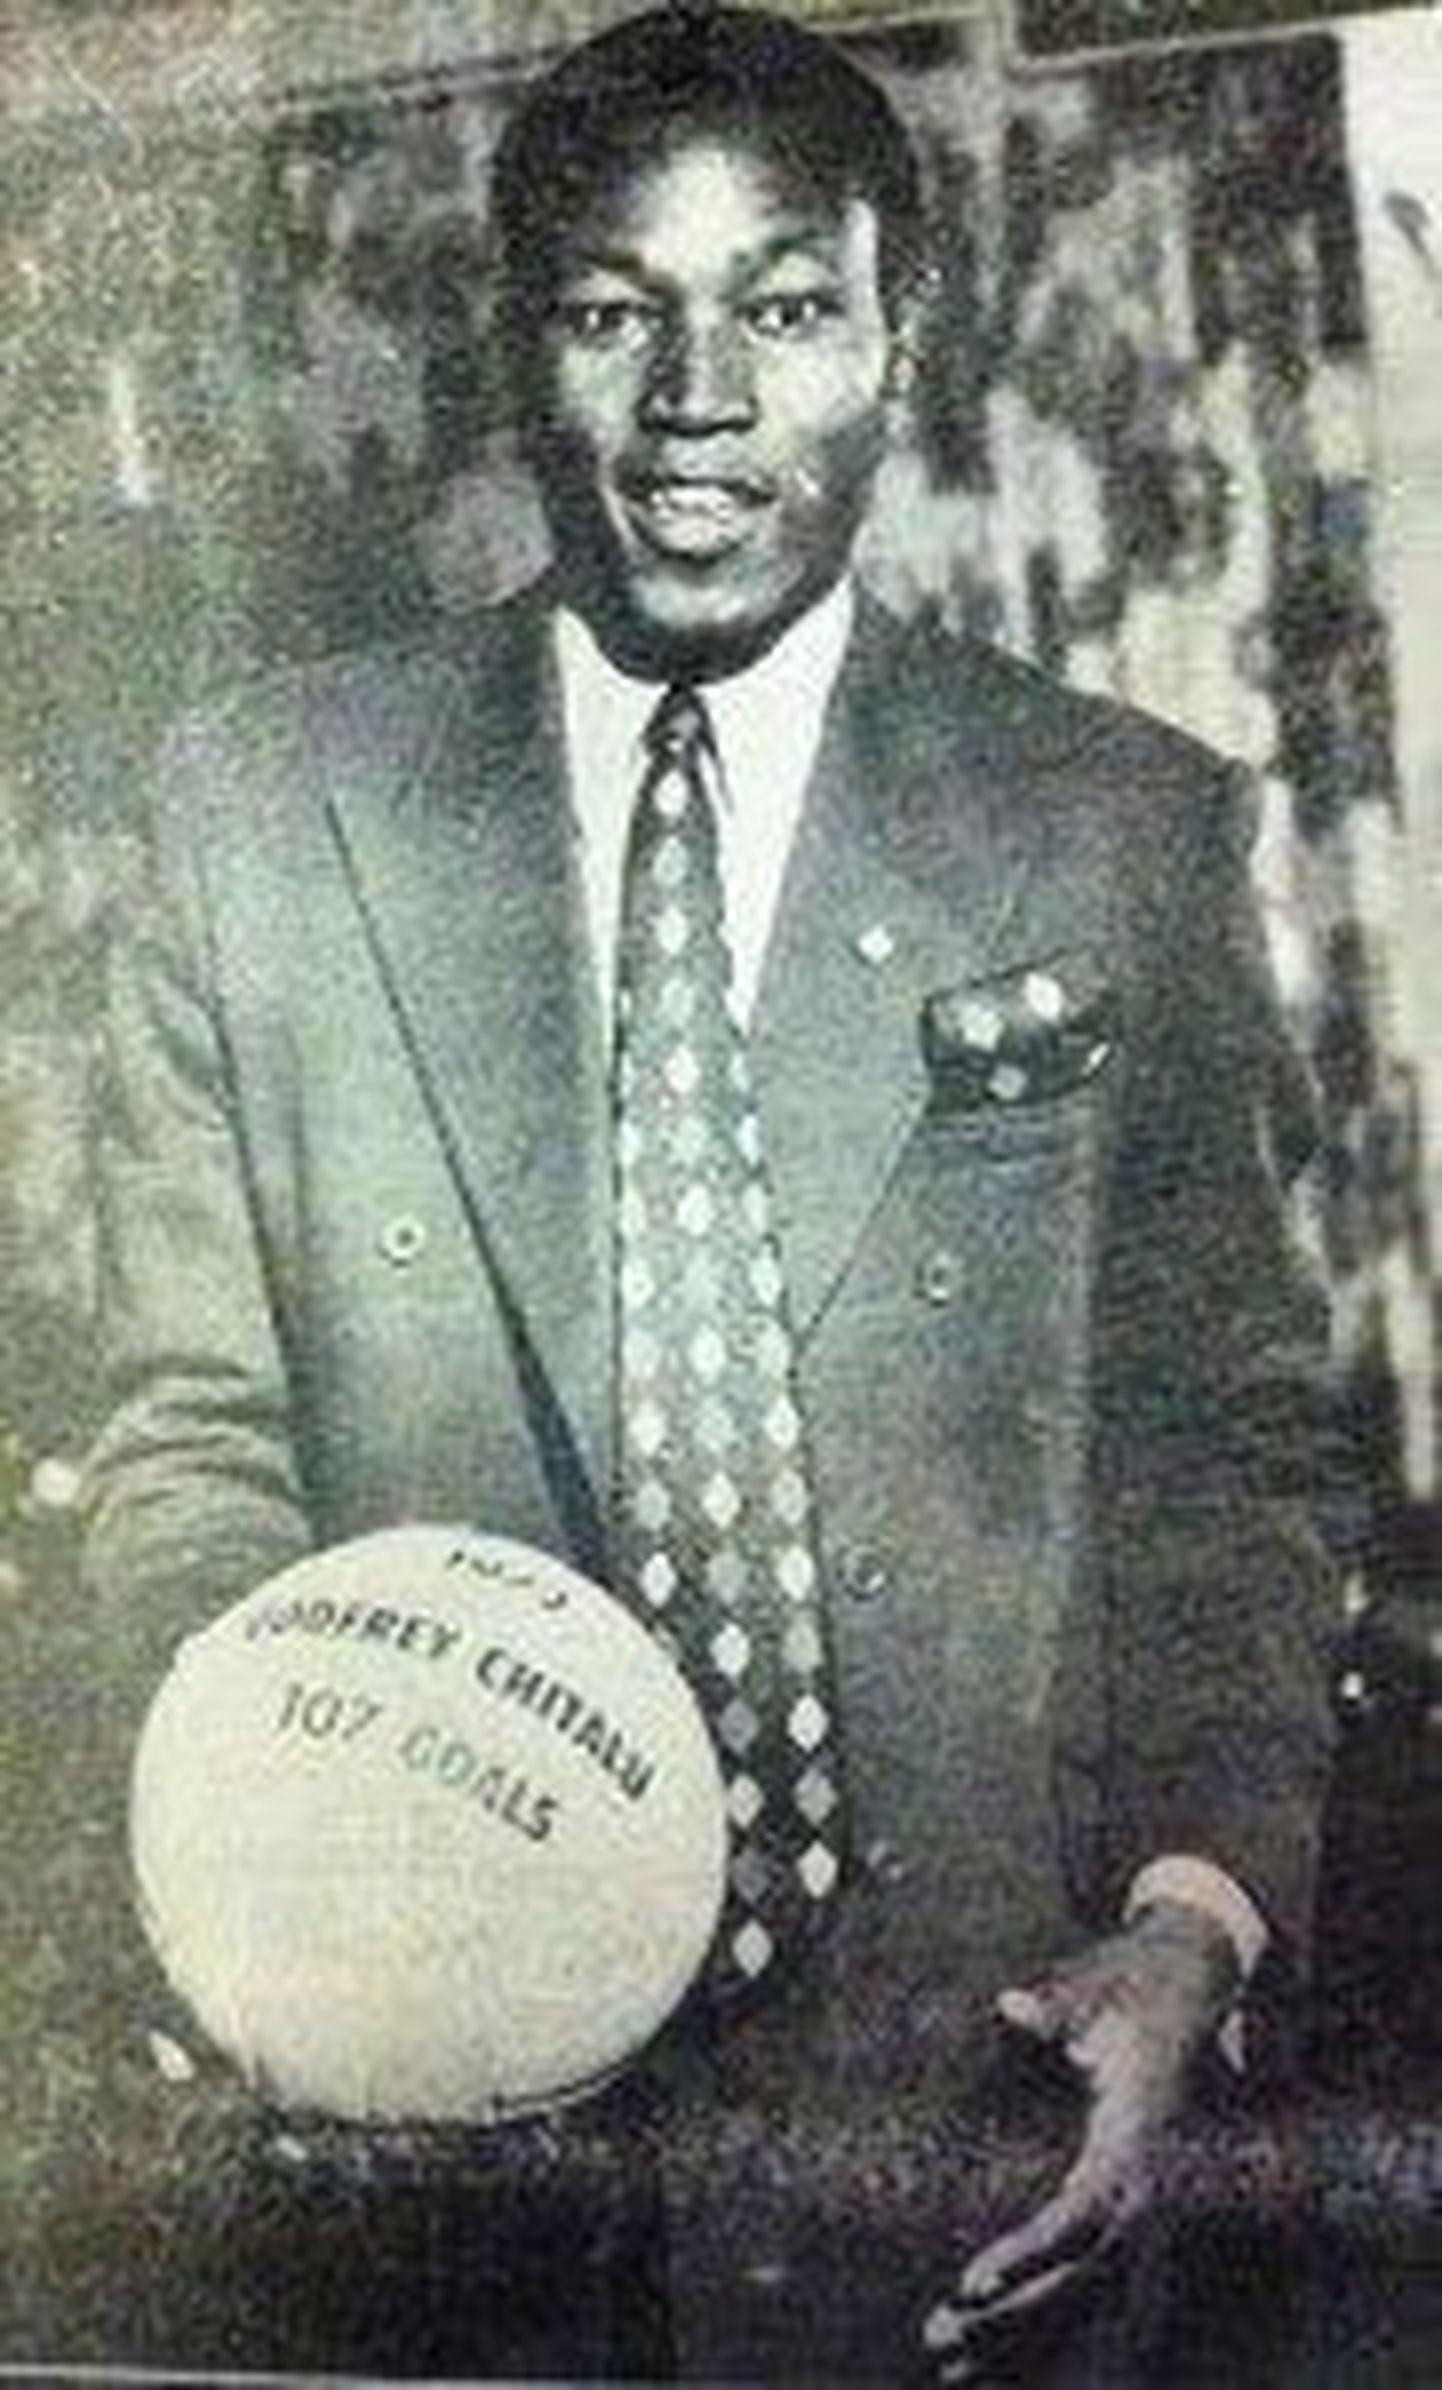 Godfrey Chitalu hoidmas käes palli, kus on ära märgitud tema rekord.